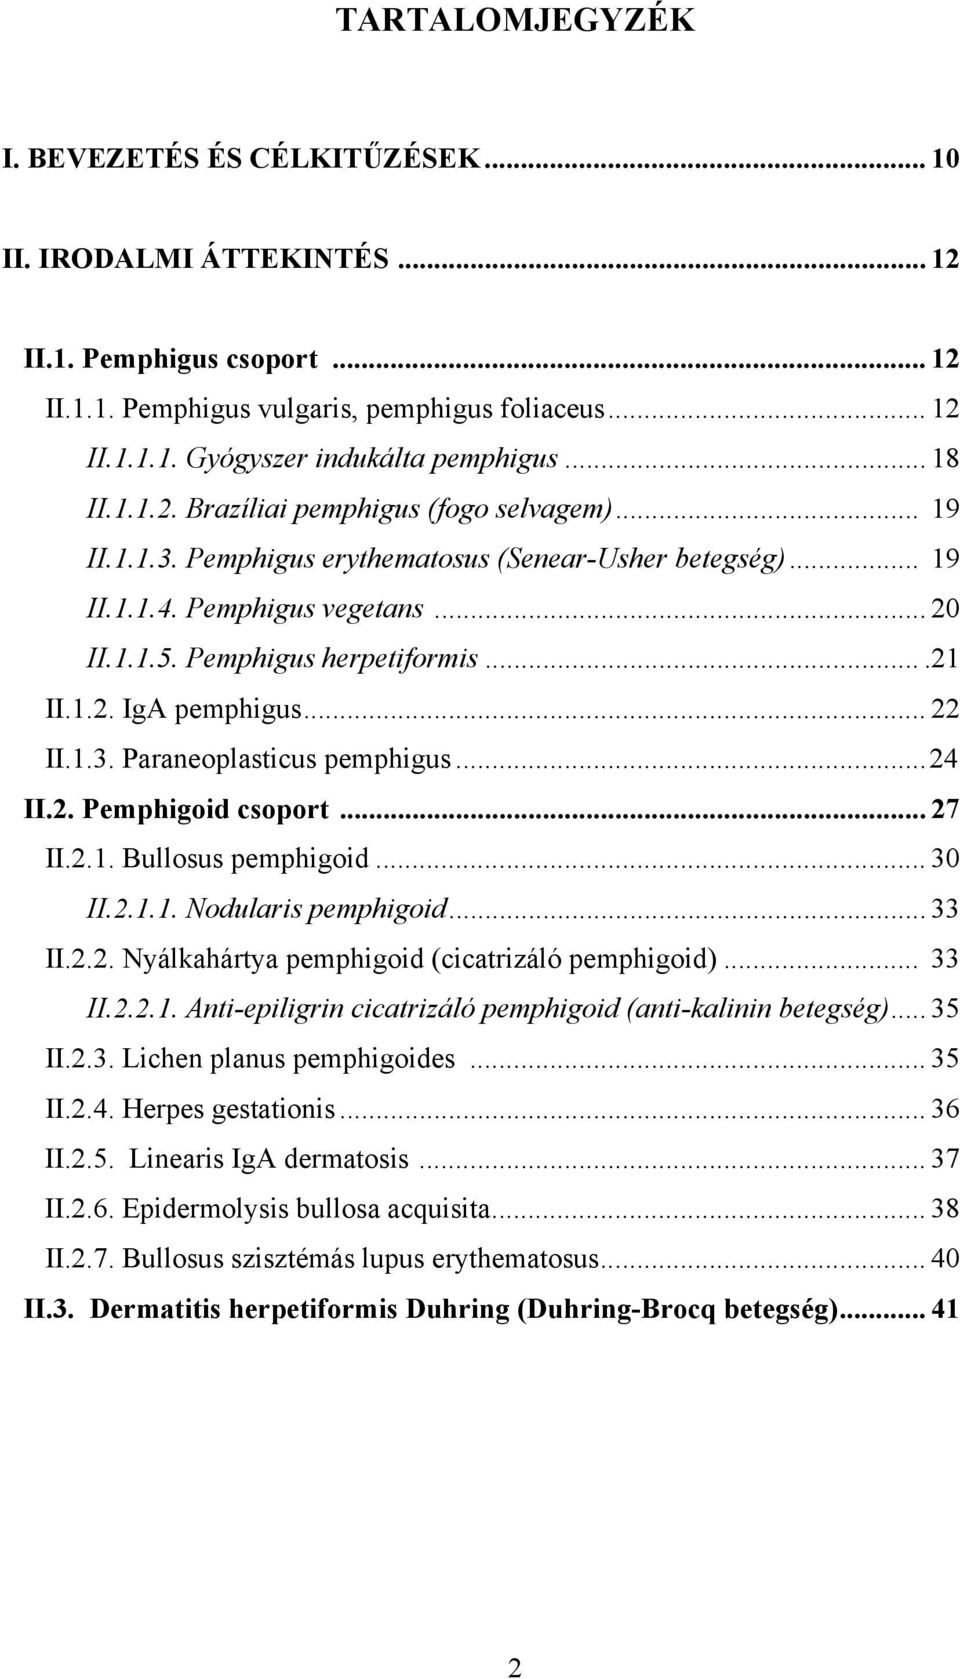 1.2. IgA pemphigus... 22 II.1.3. Paraneoplasticus pemphigus...24 II.2. Pemphigoid csoport... 27 II.2.1. Bullosus pemphigoid... 30 II.2.1.1. Nodularis pemphigoid... 33 II.2.2. Nyálkahártya pemphigoid (cicatrizáló pemphigoid).